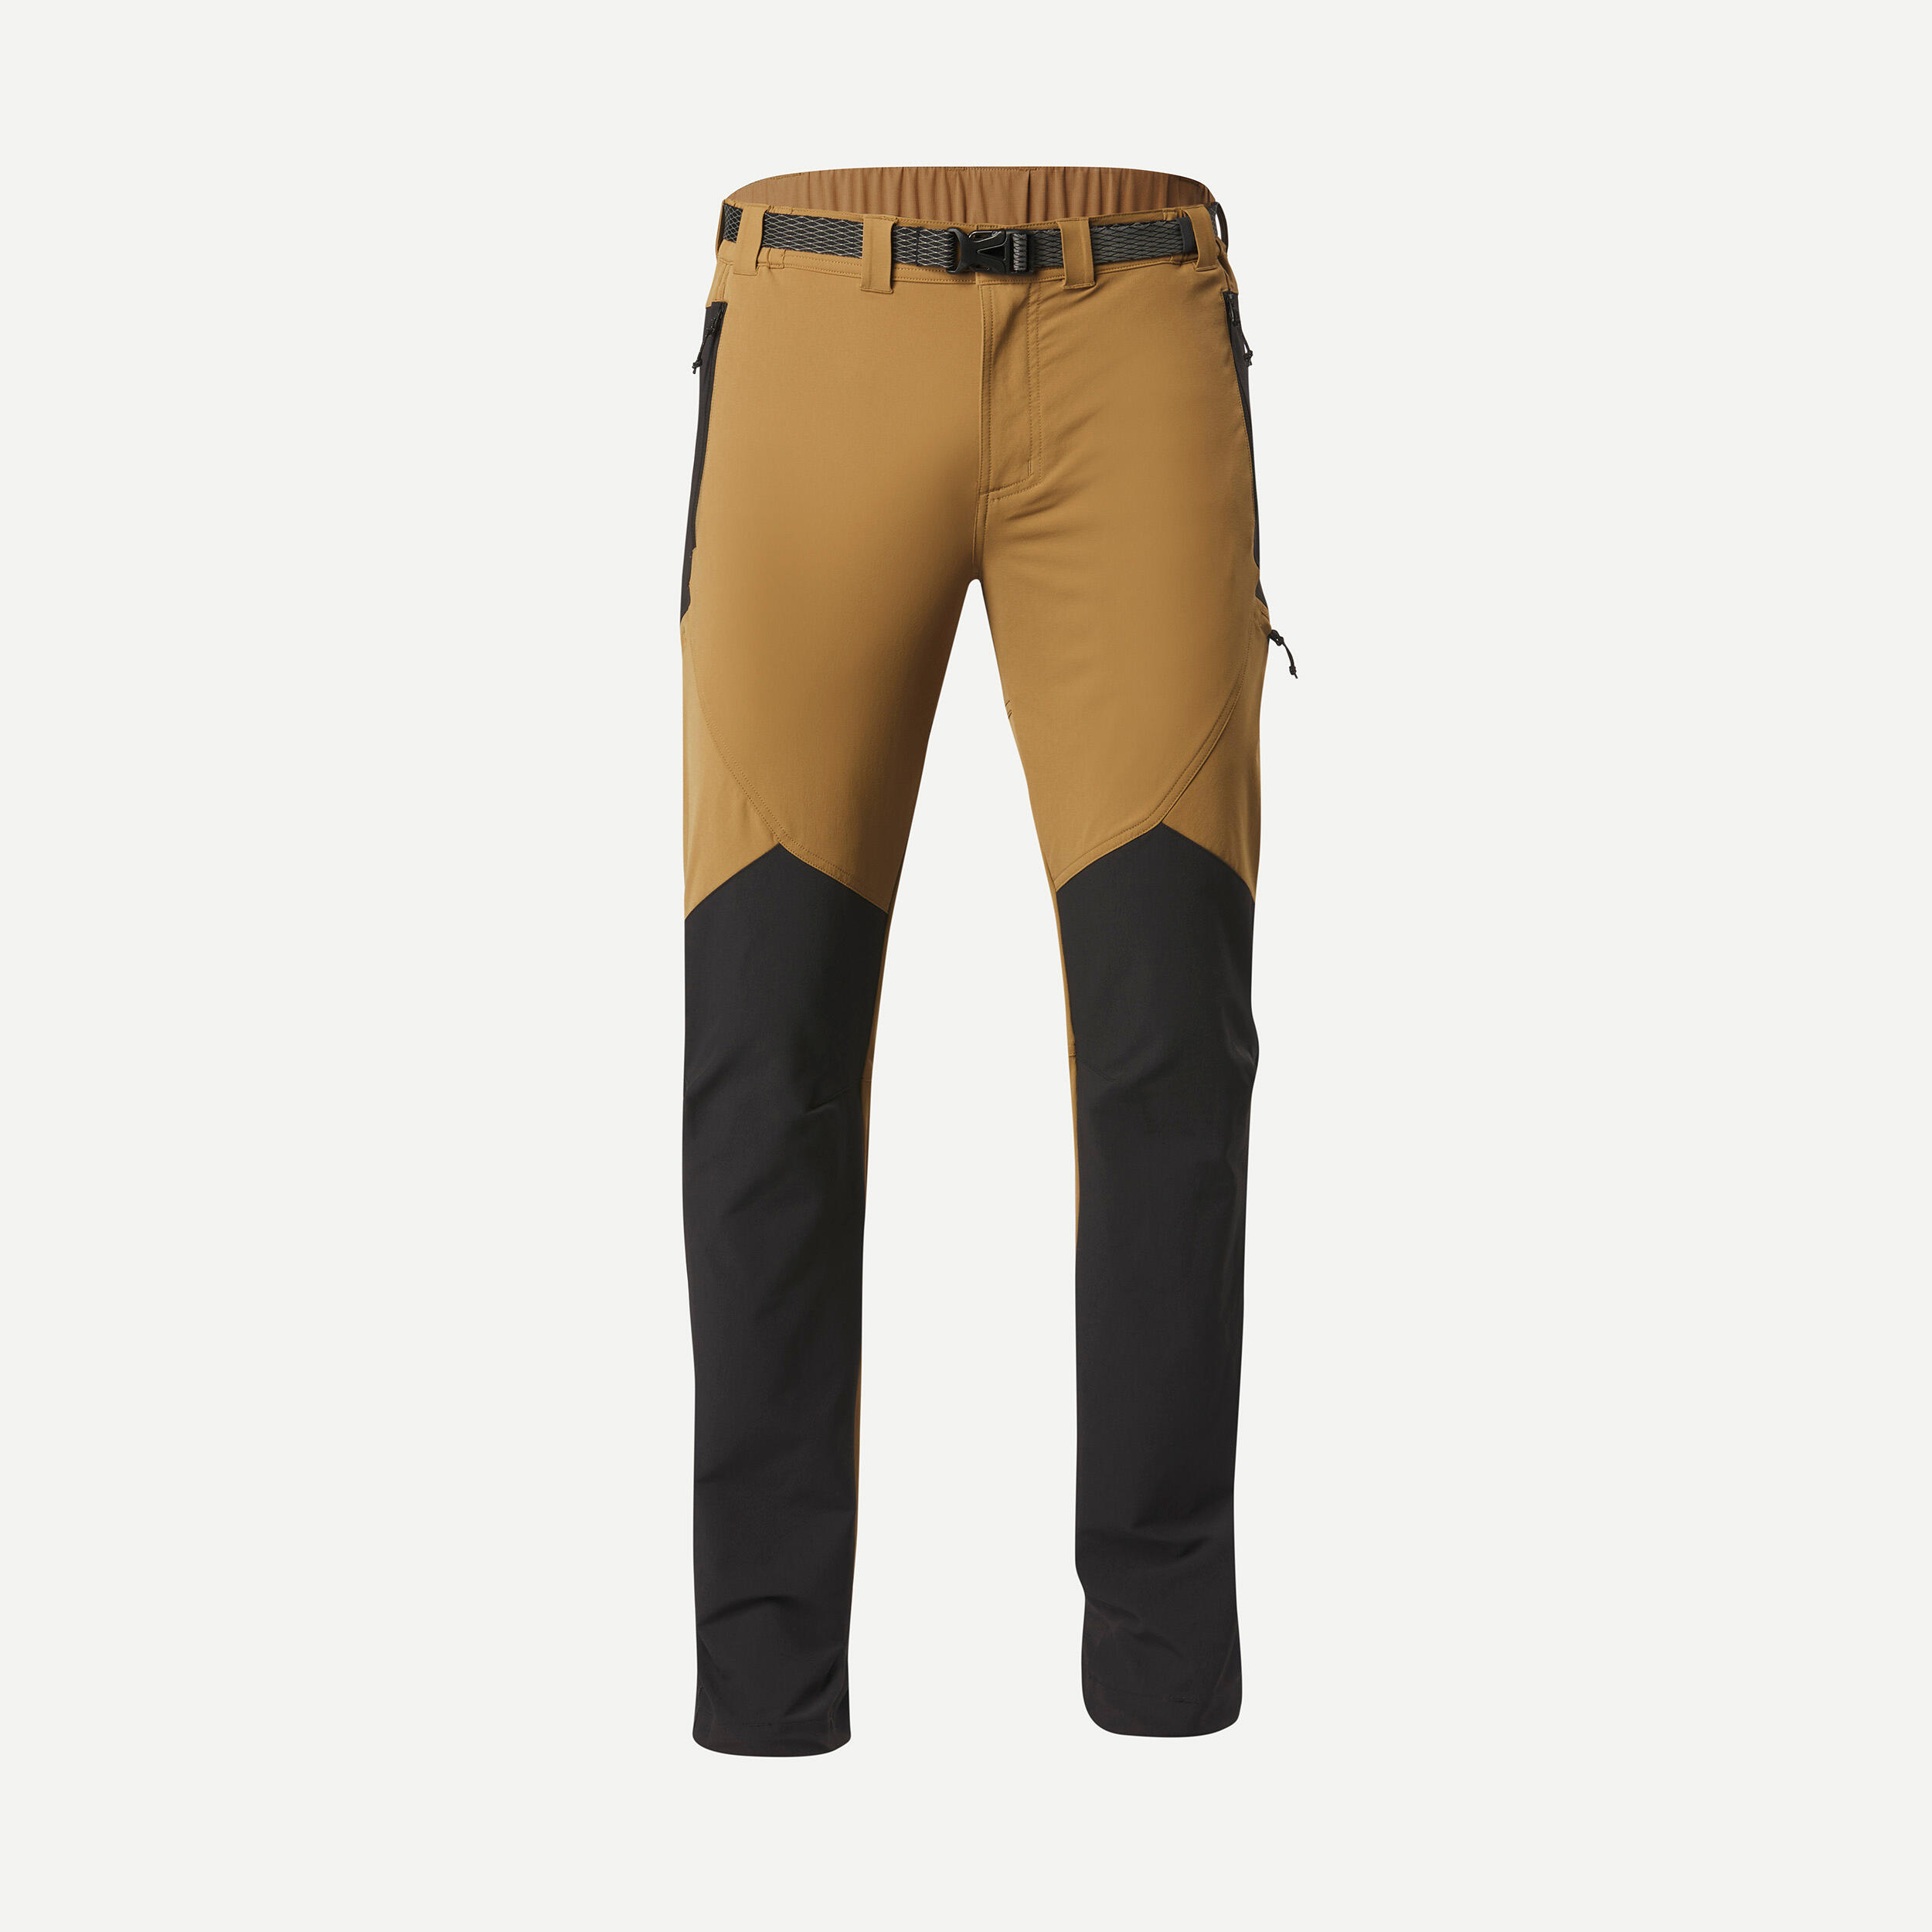 Men’s water-repellent and wind-resistant trekking trousers - MT900 7/8